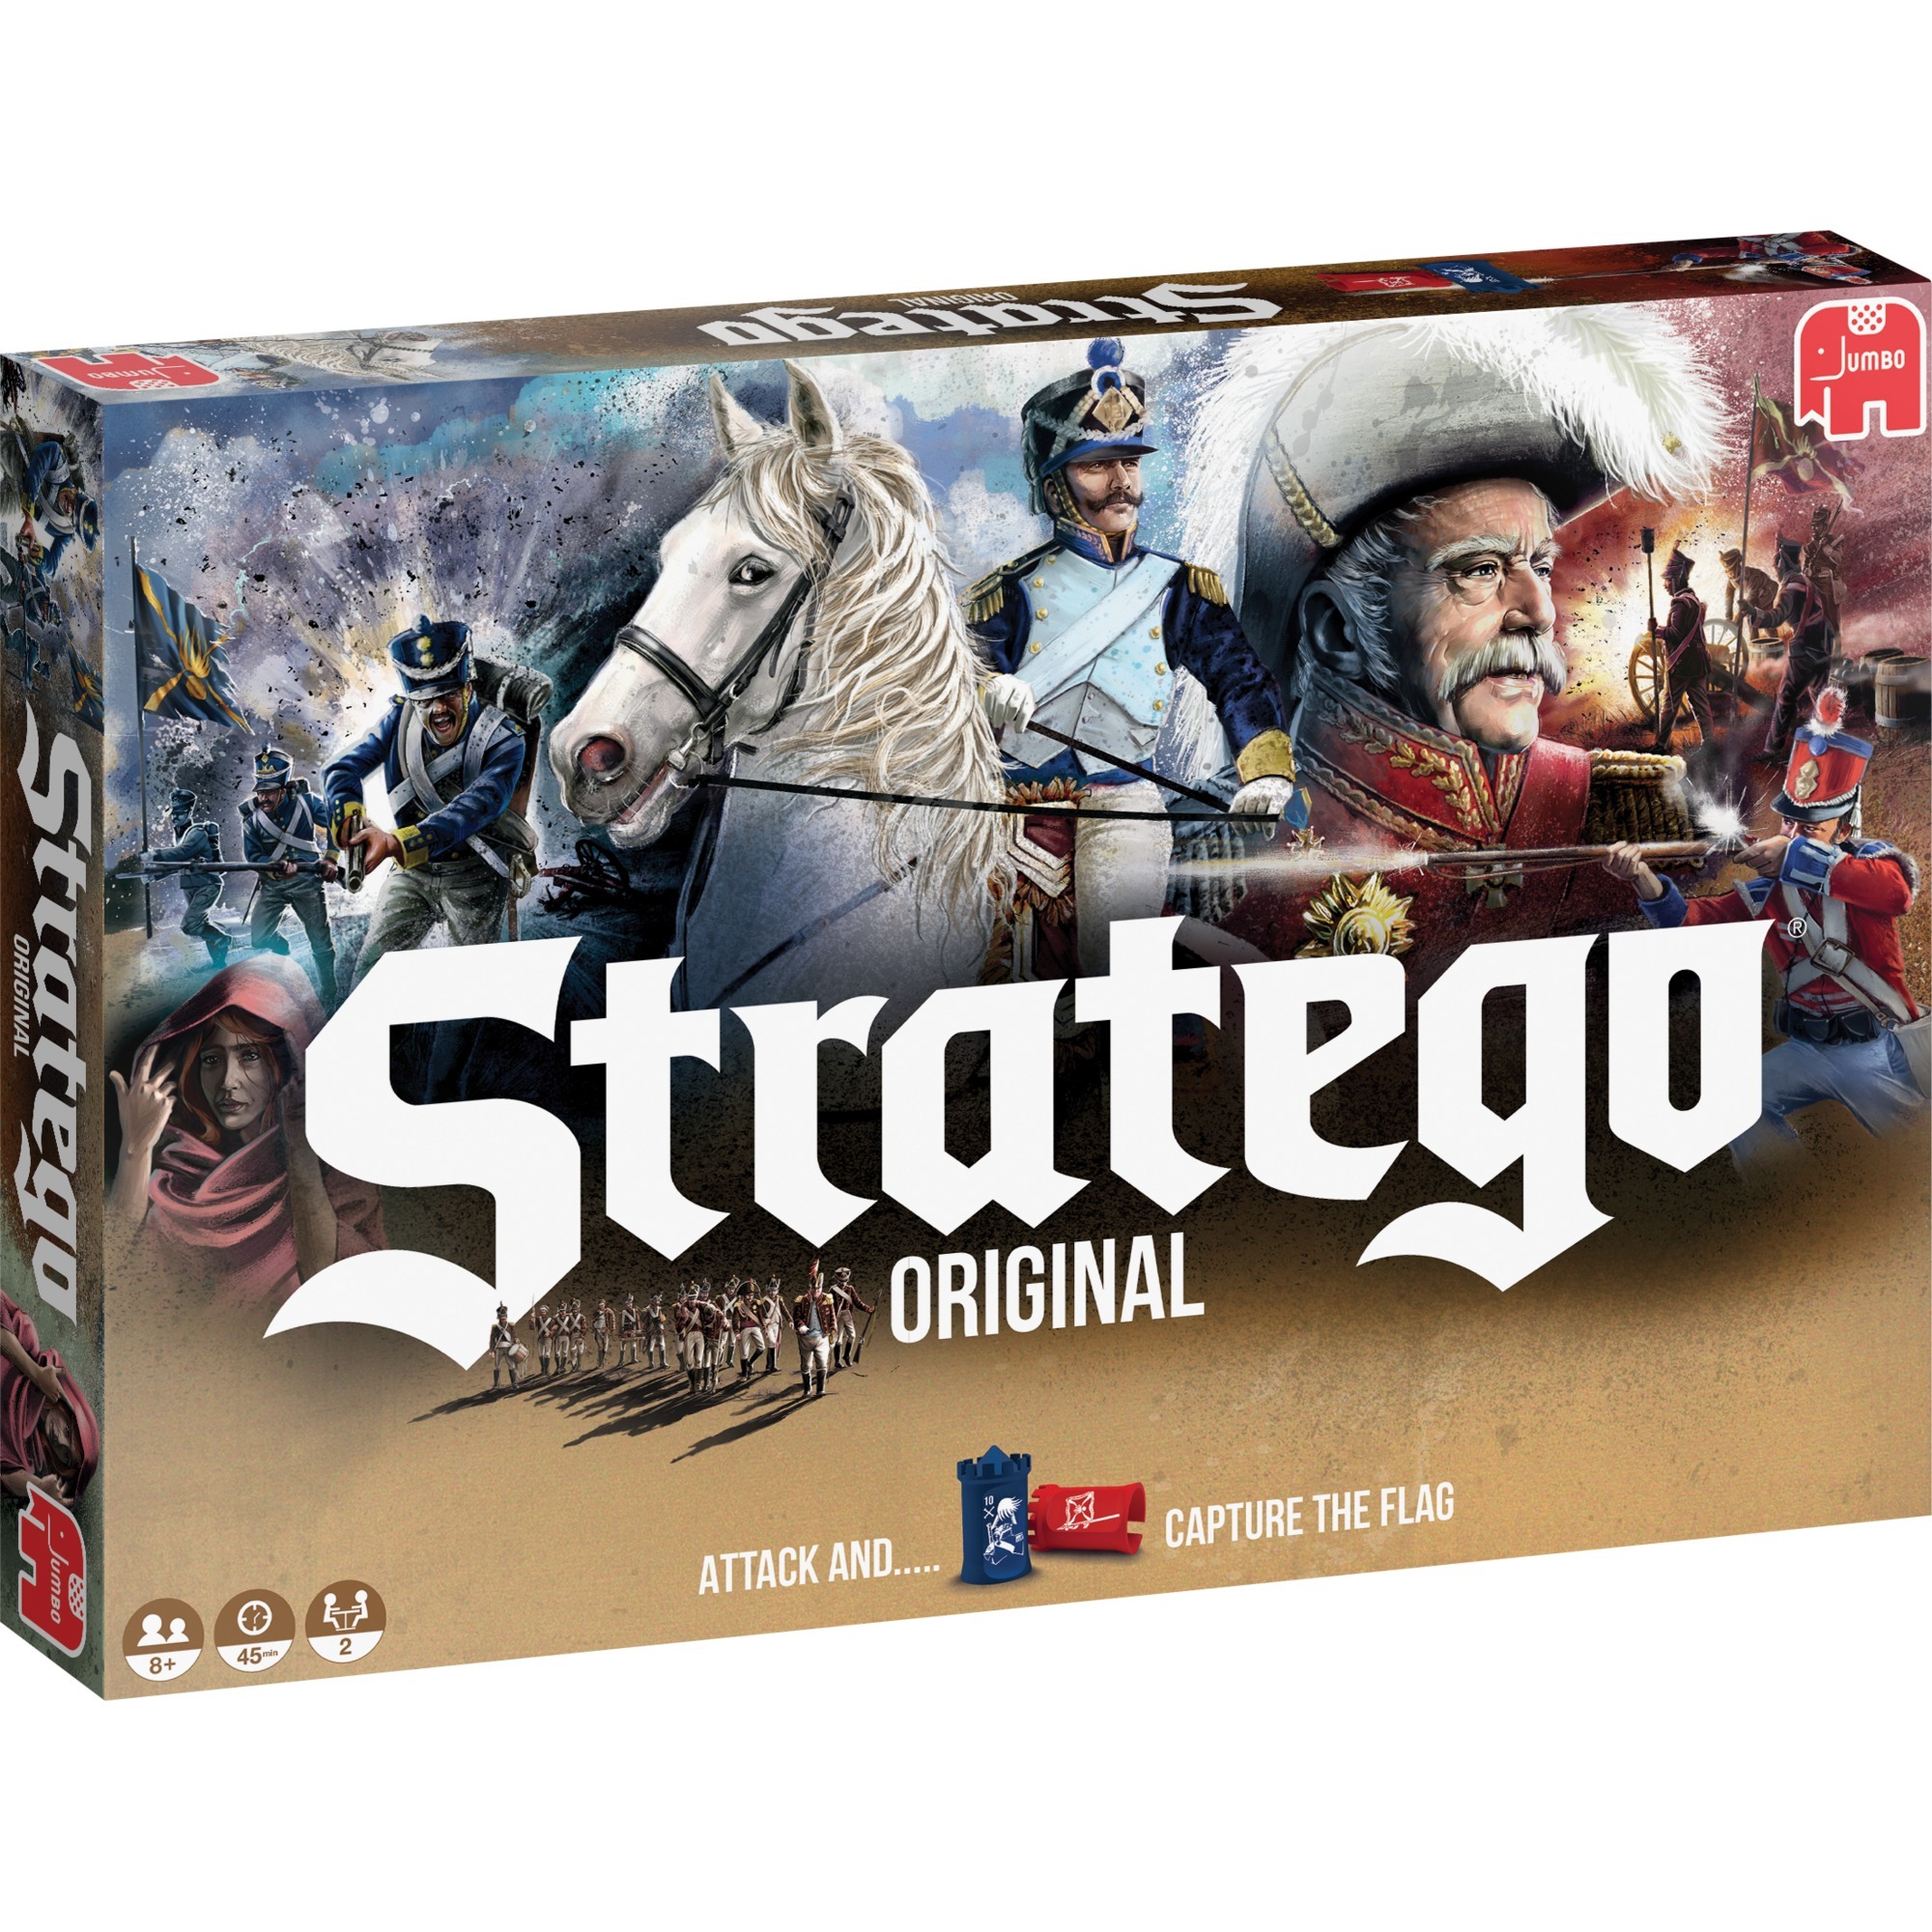 Image of Alternate - Stratego Original 2017, Brettspiel online einkaufen bei Alternate